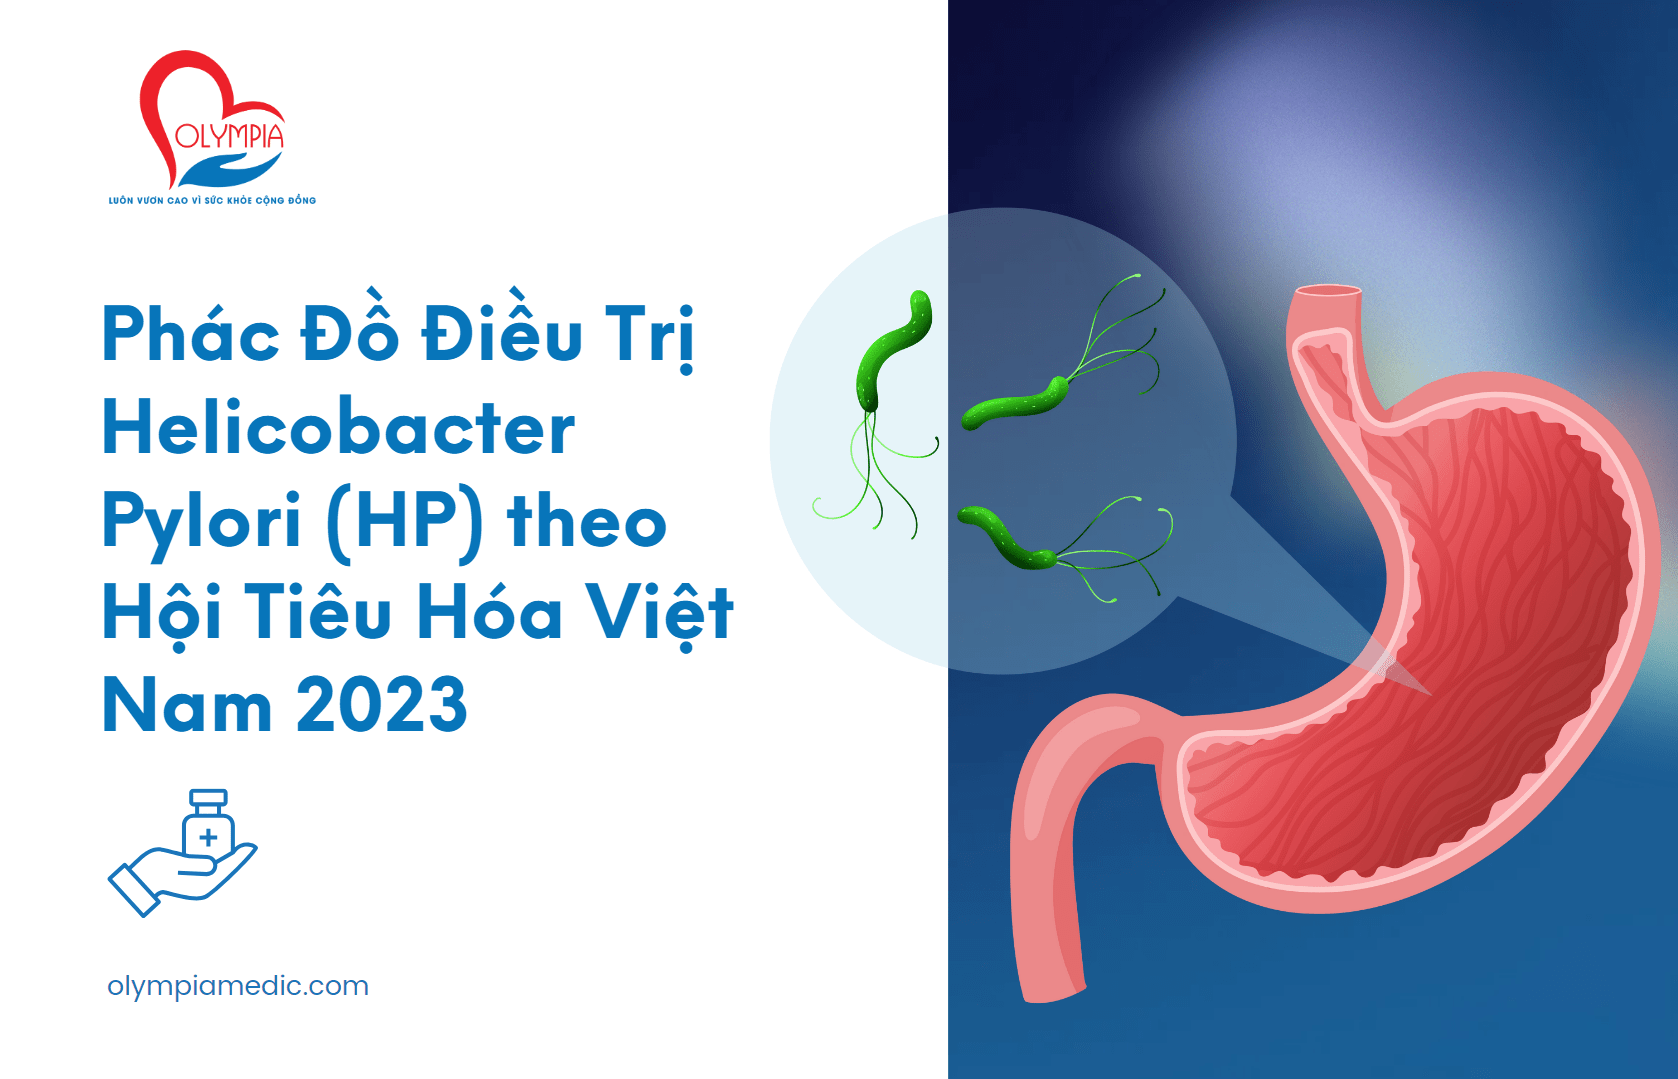 Phác Đồ Điều Trị Helicobacter Pylori (HP) theo Hội Tiêu Hóa Việt Nam 2023